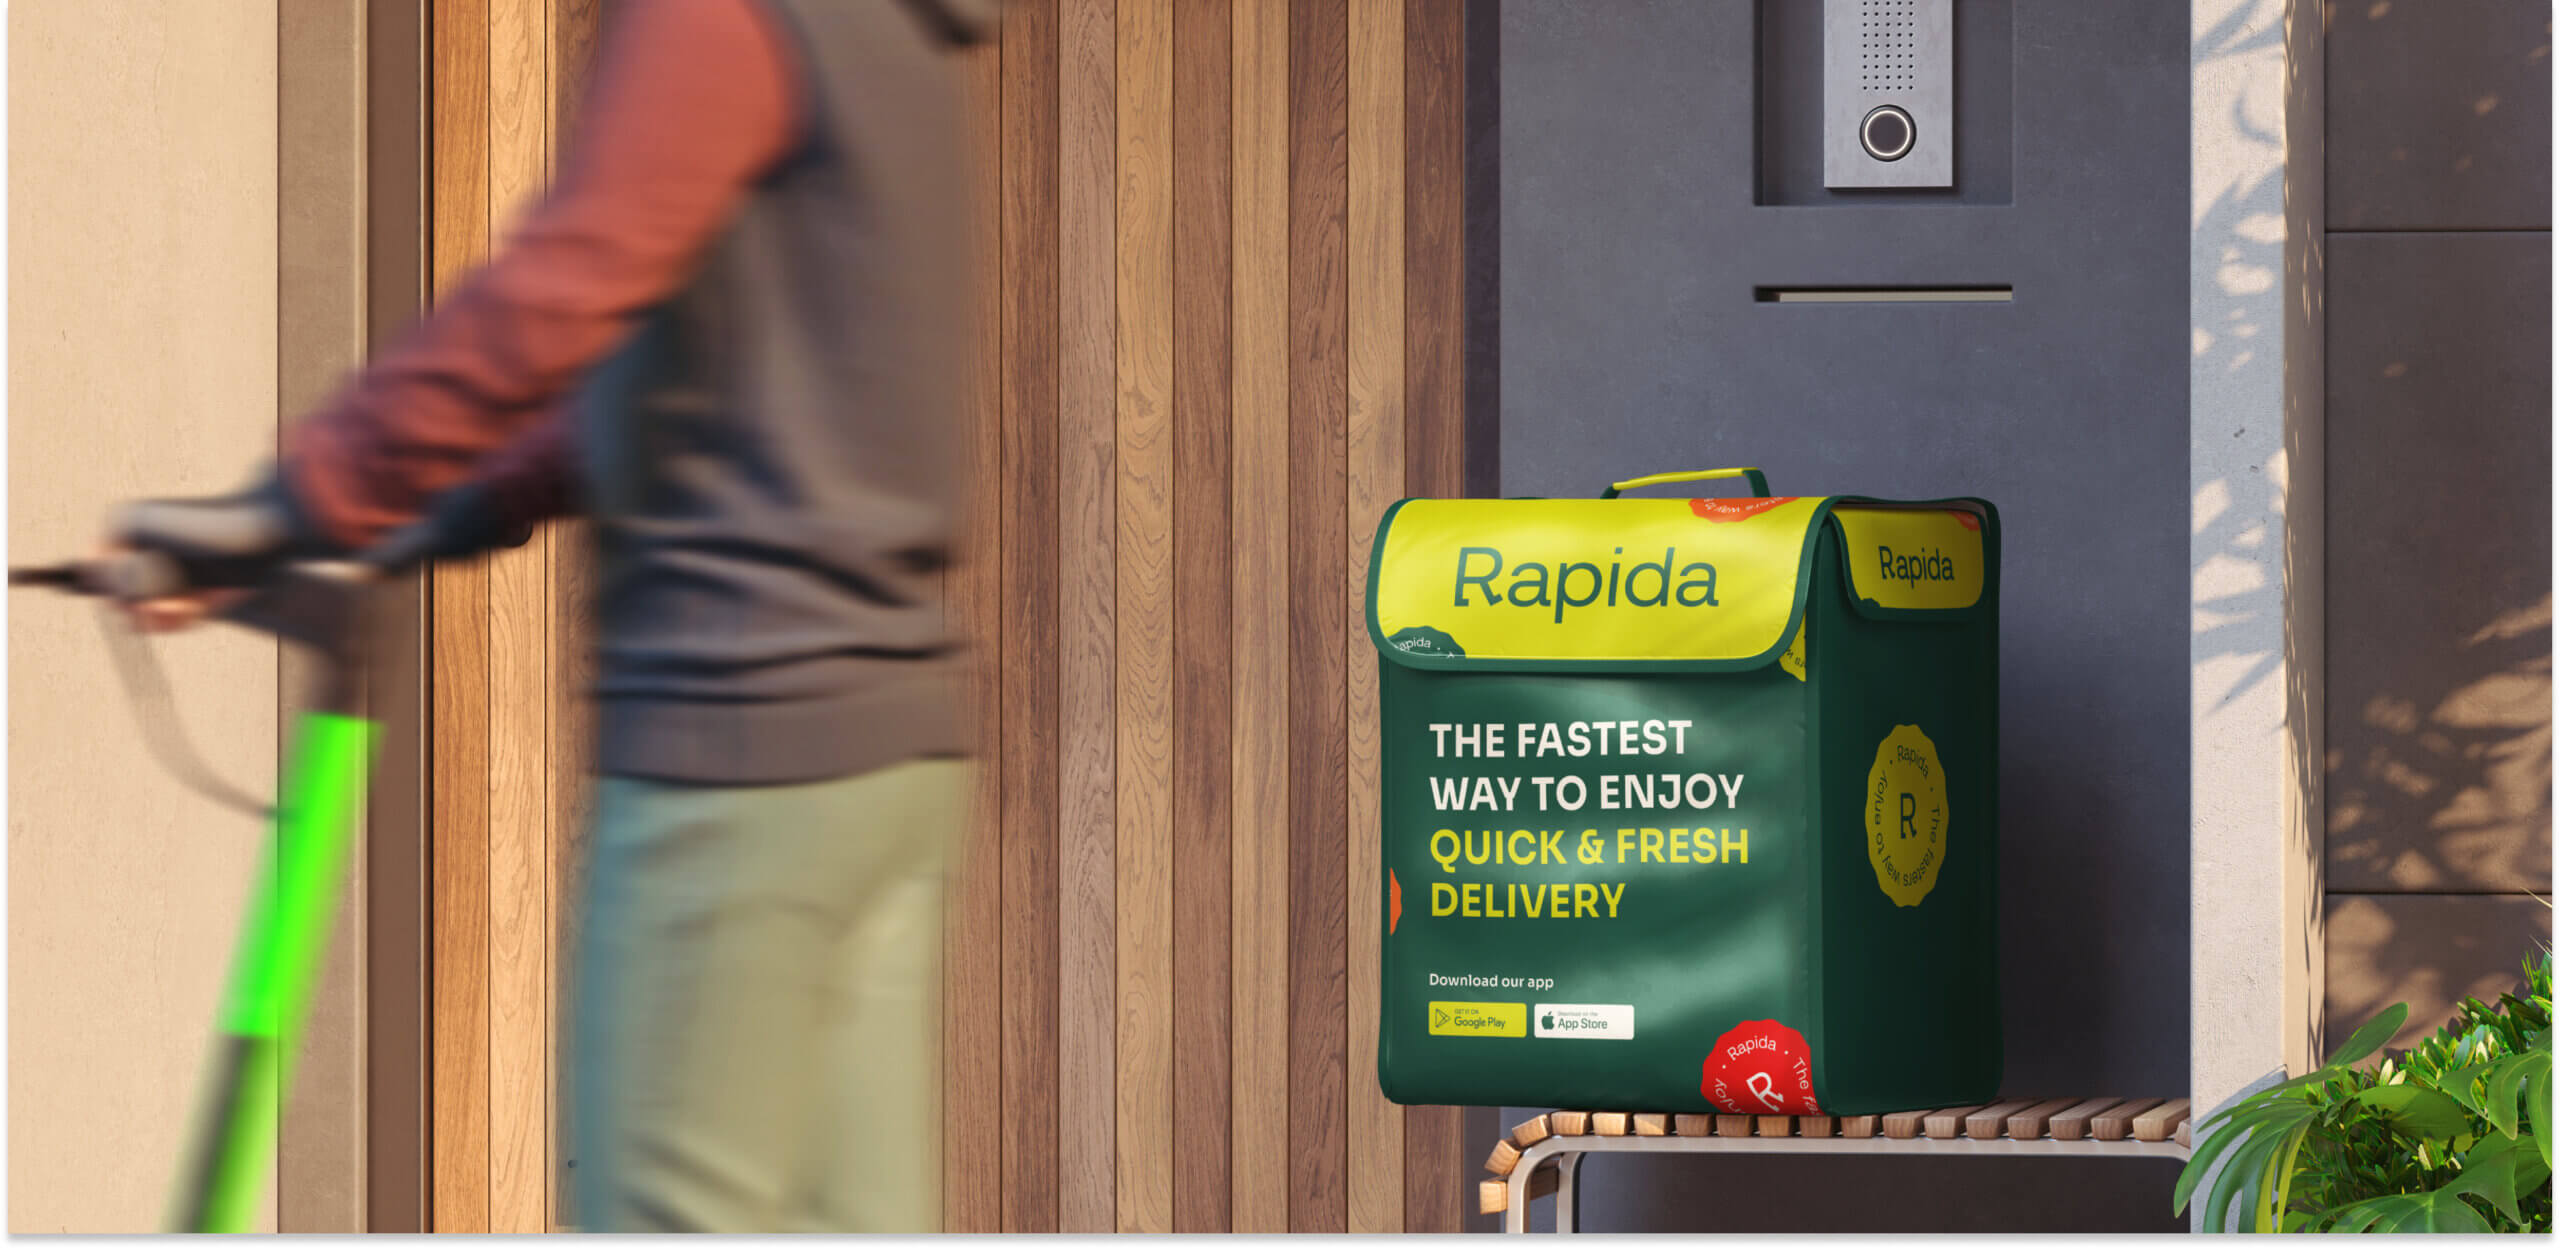 Rapida – Branding per il servizio di consegna - Website Development - Photo 1